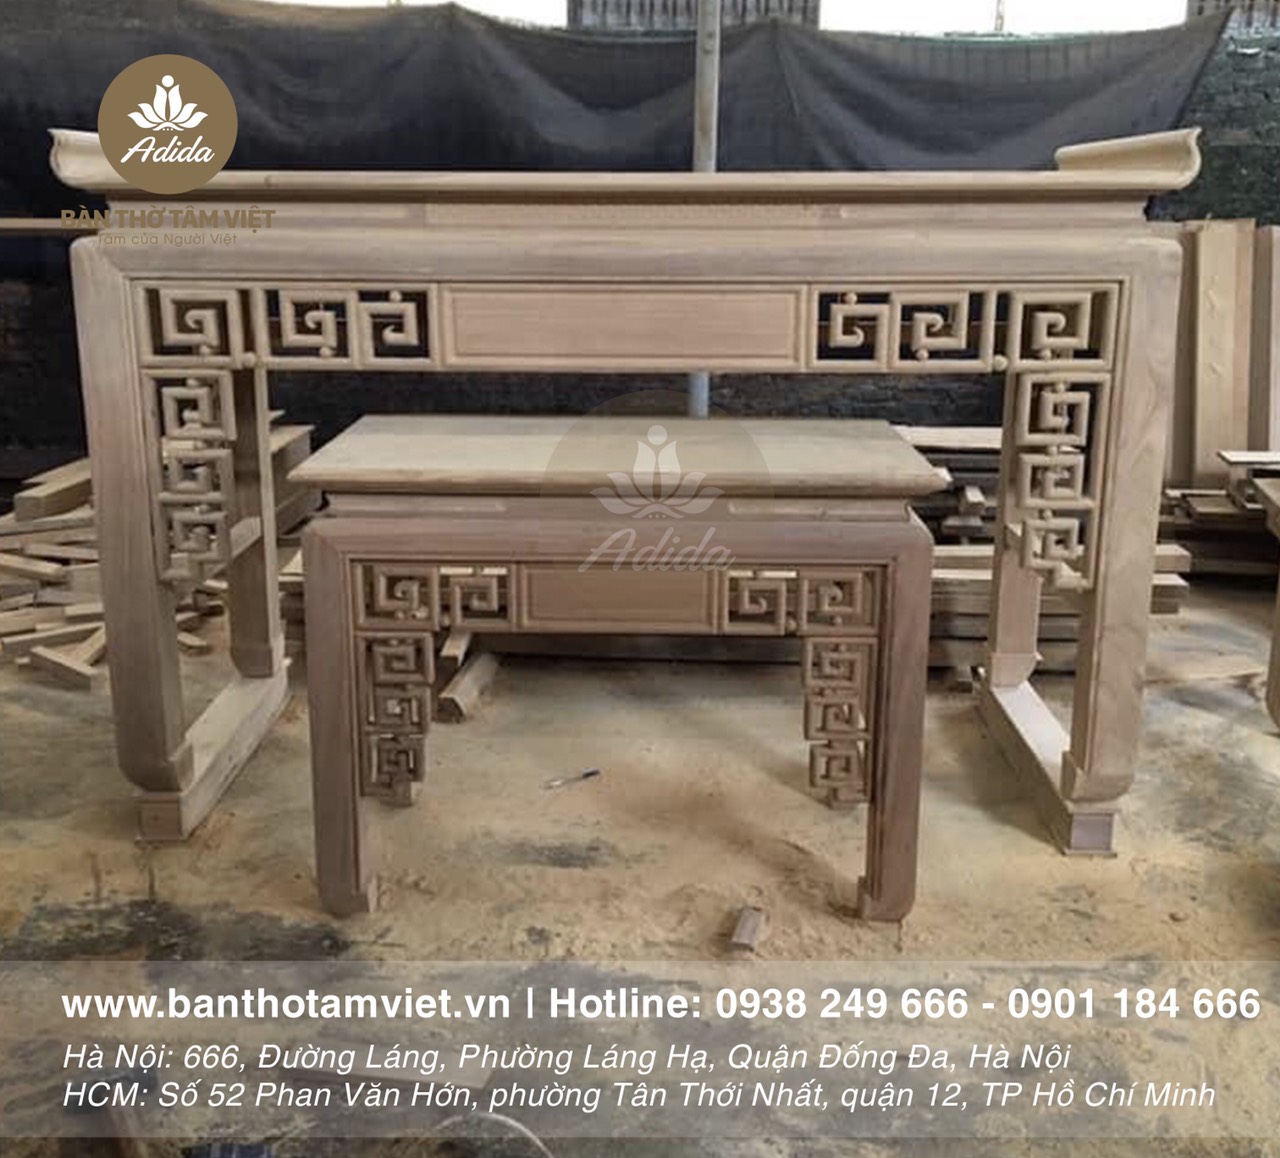 xưởng sản xuất bàn thờ Tâm Việt